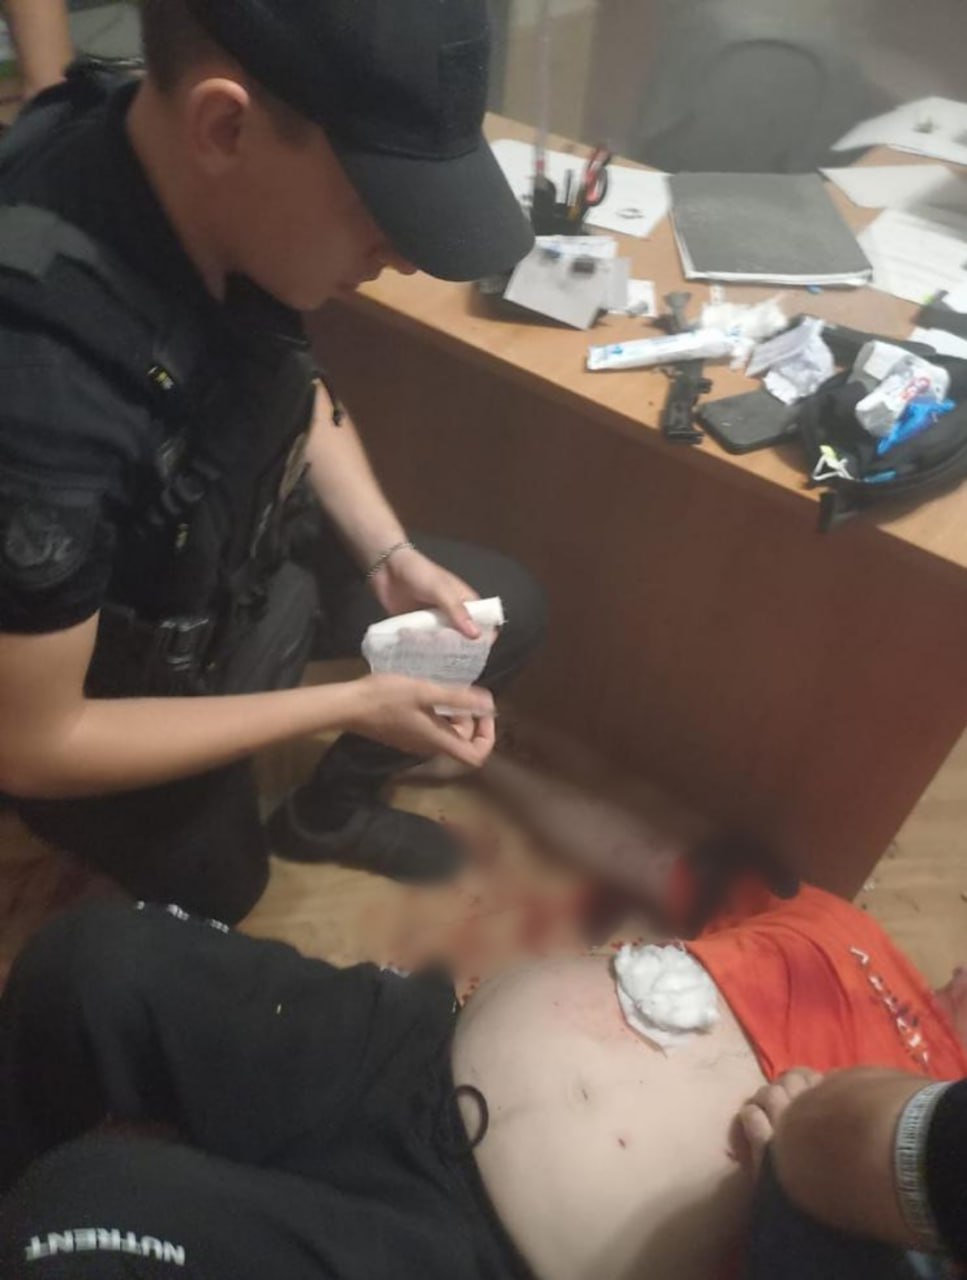 В Марганце мужчина подорвал себя гранатой в помещении Пенсионного фонда: фото — фото